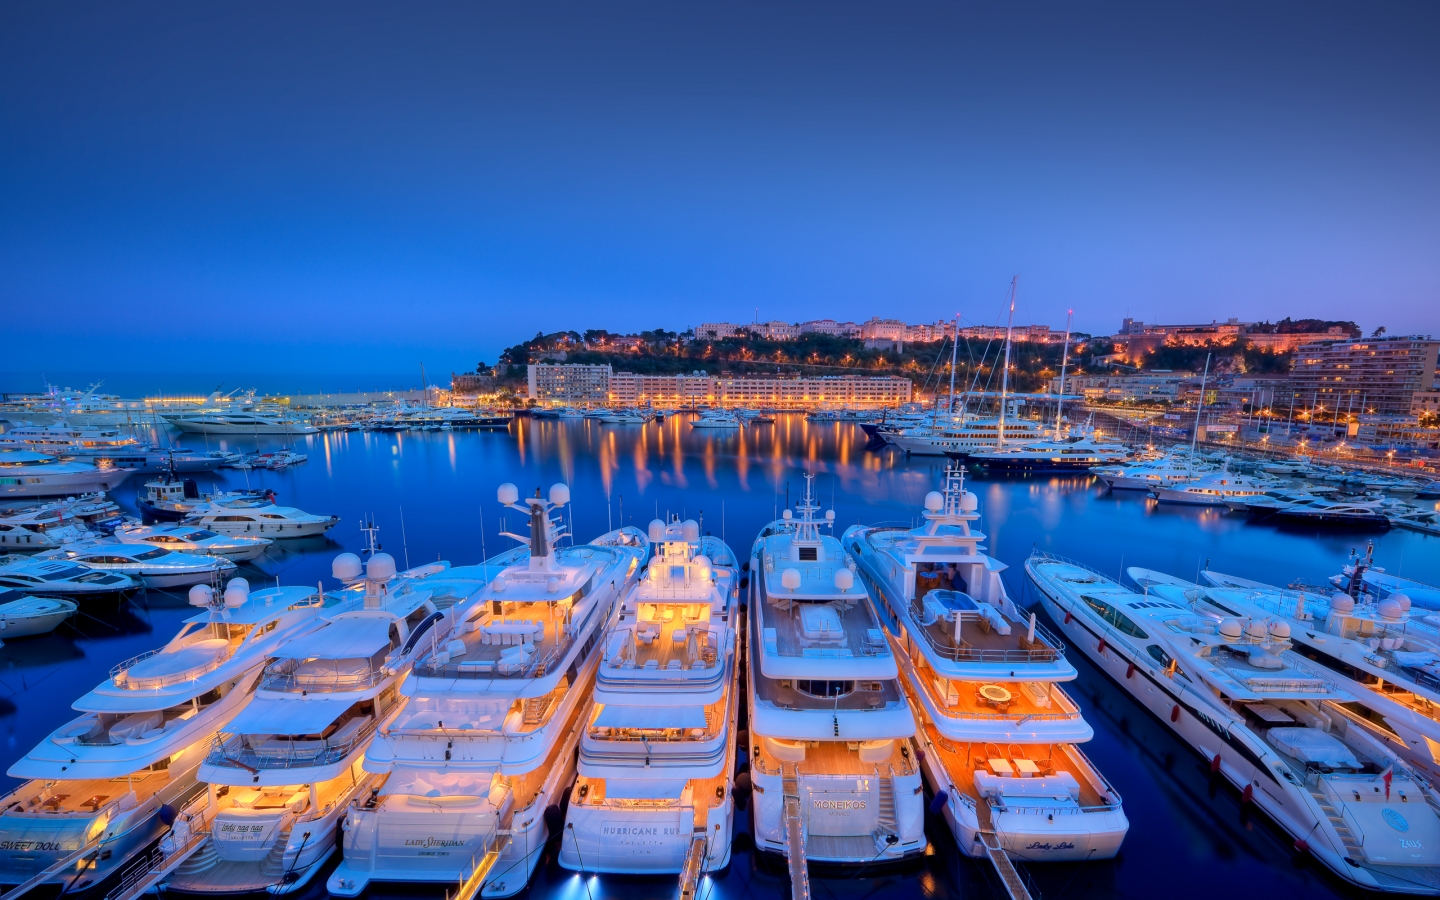 Monaco Seaport for 1440 x 900 widescreen resolution